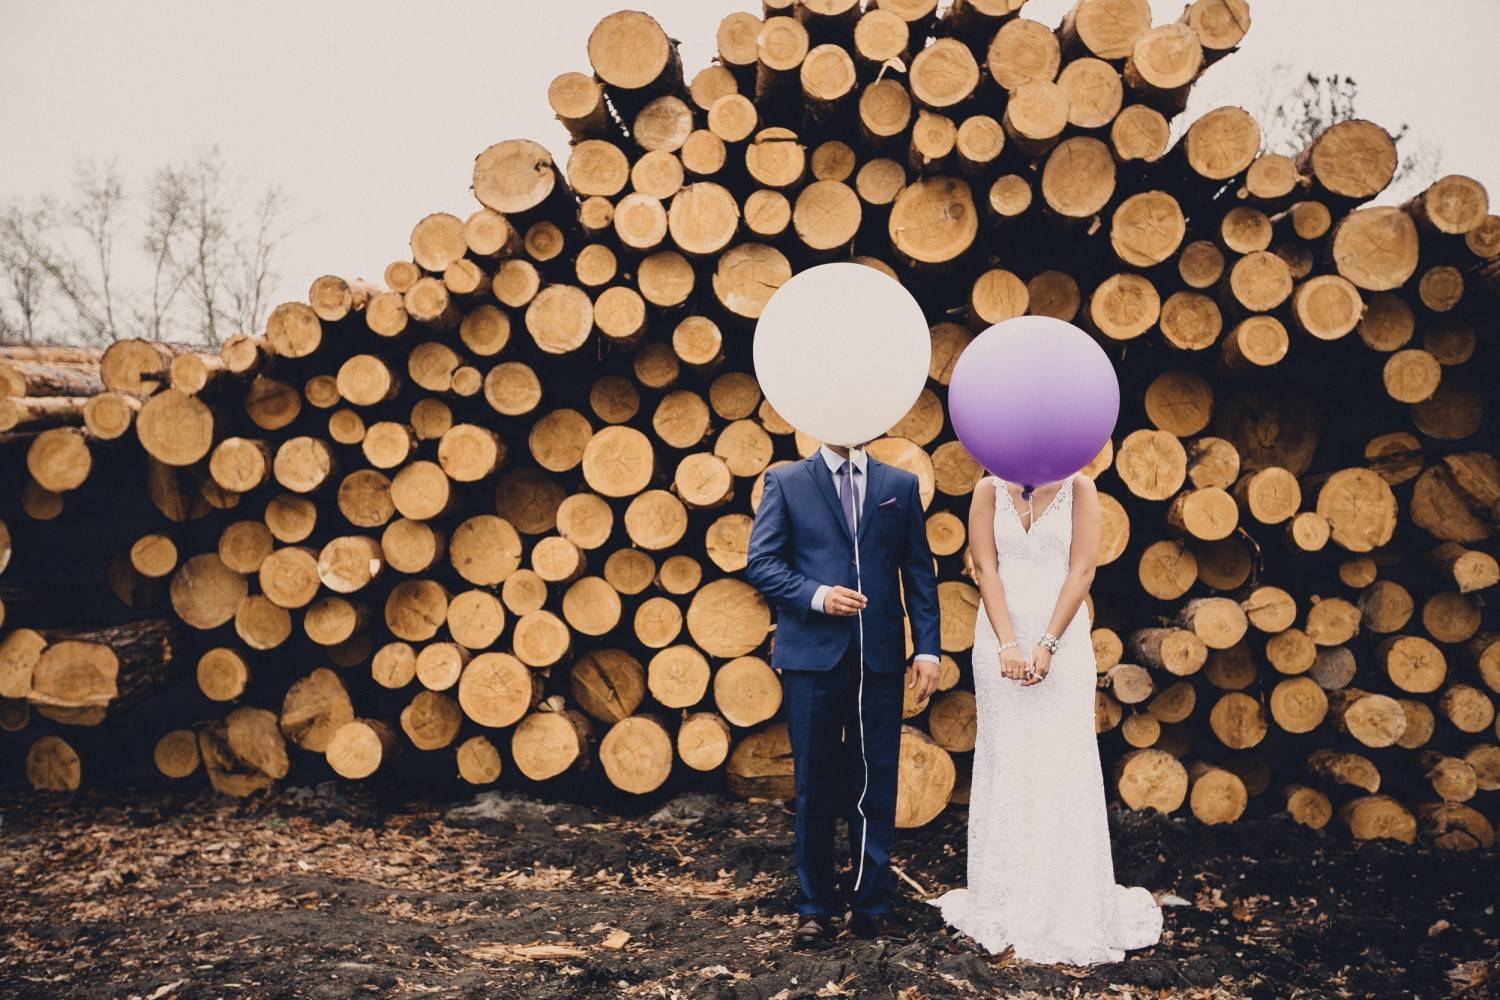 Деревянная свадьба сколько лет? как отметить 5 лет деревянной свадьбы? идеи праздника